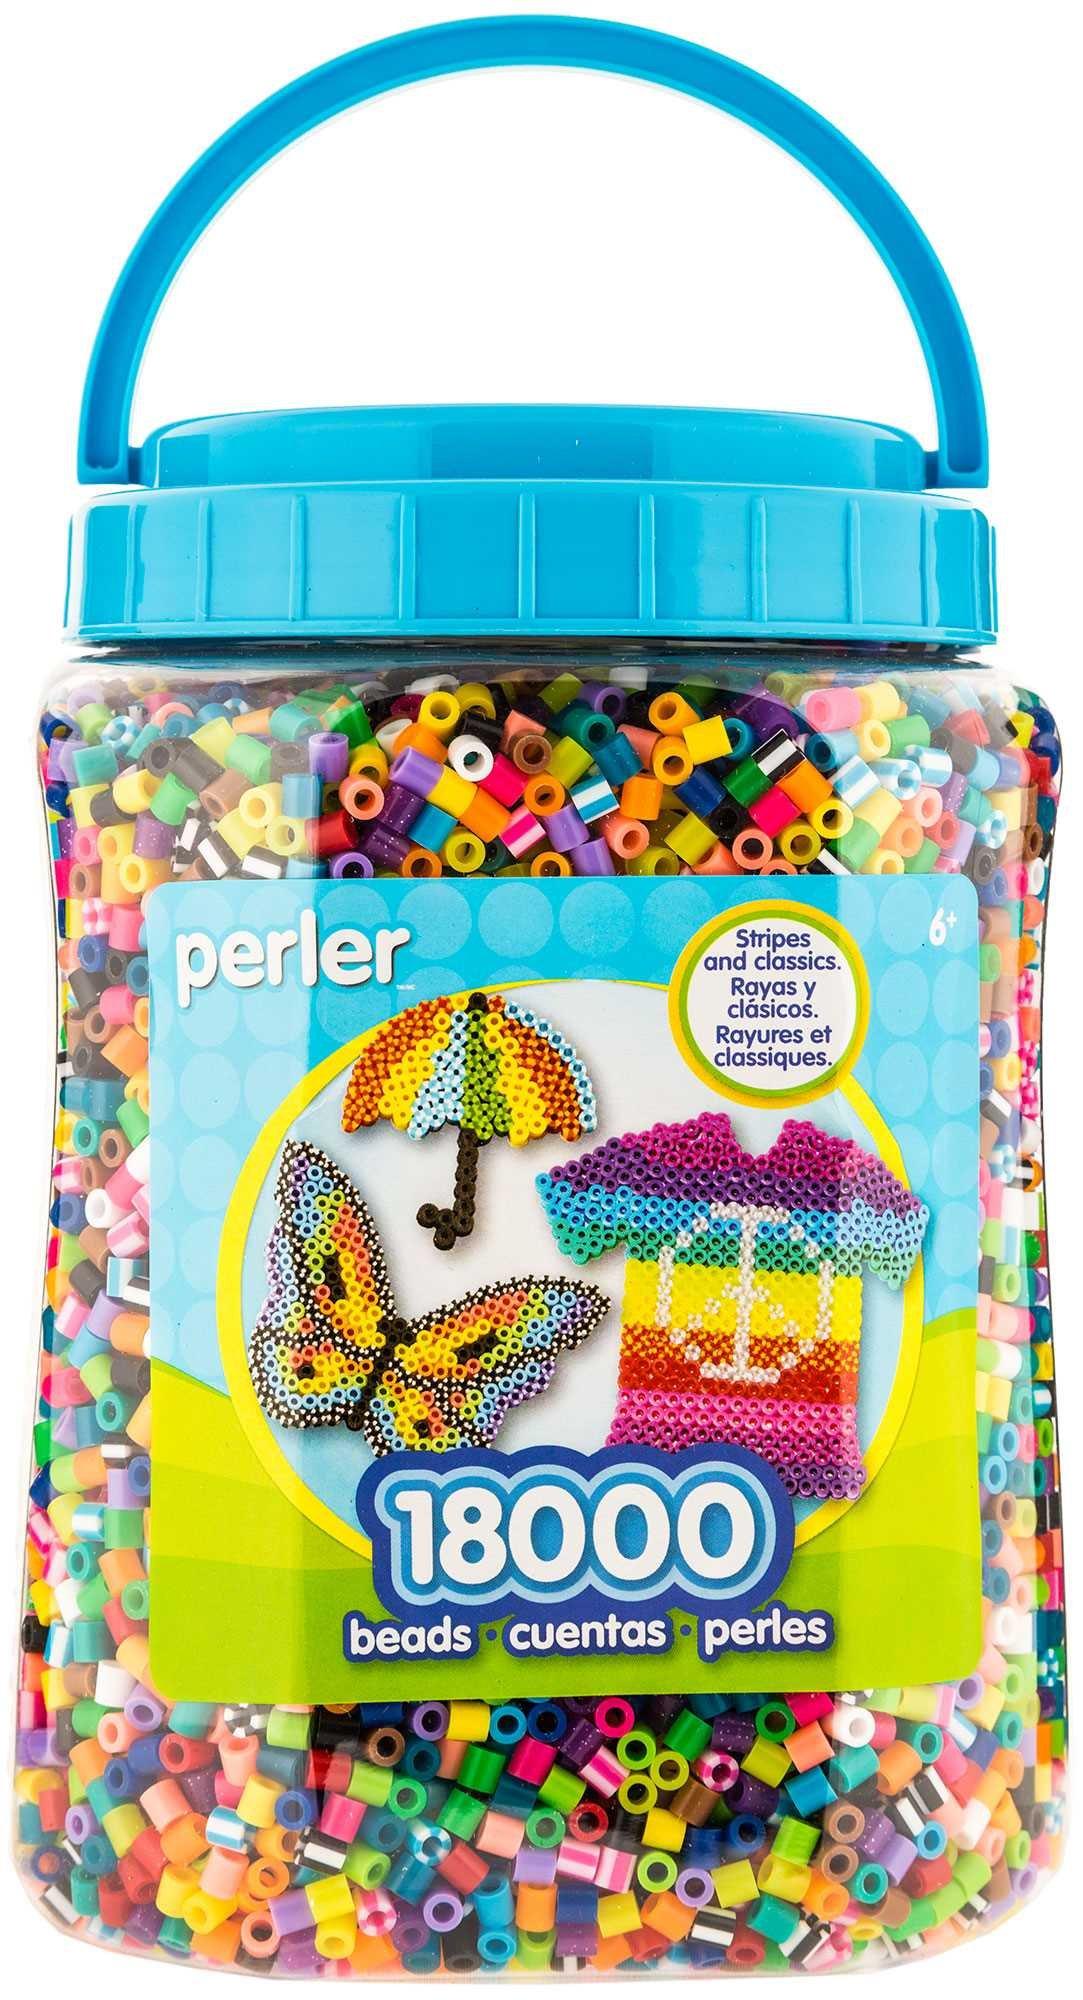 Perler Beads 1,000/Pkg-Midnight, 1 - Kroger